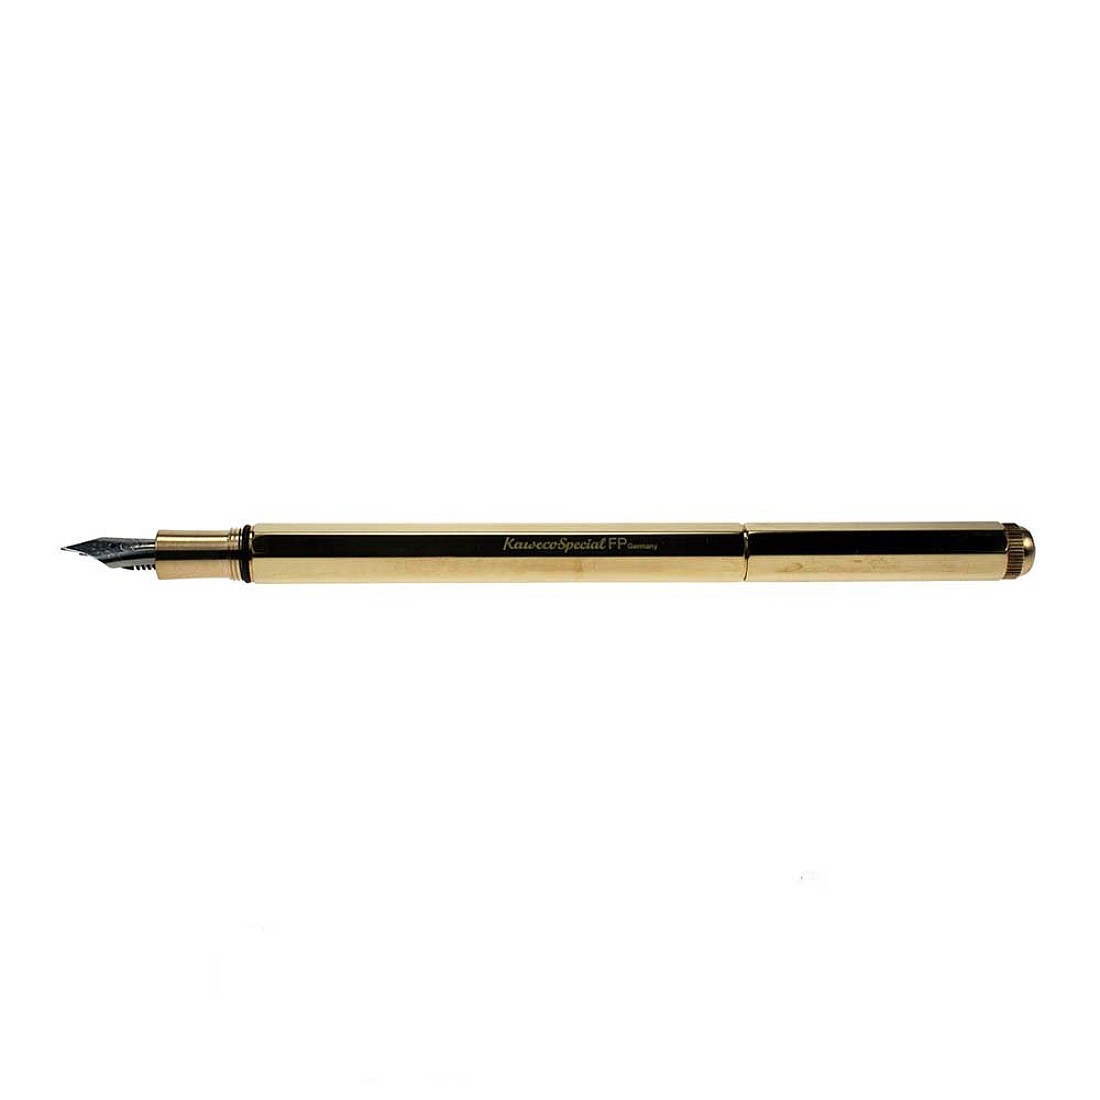 https://appelboom.com/image/cache/catalog/Kaweco/Special/kaweco-special-brass-fountain-pen-1100x1100.jpg